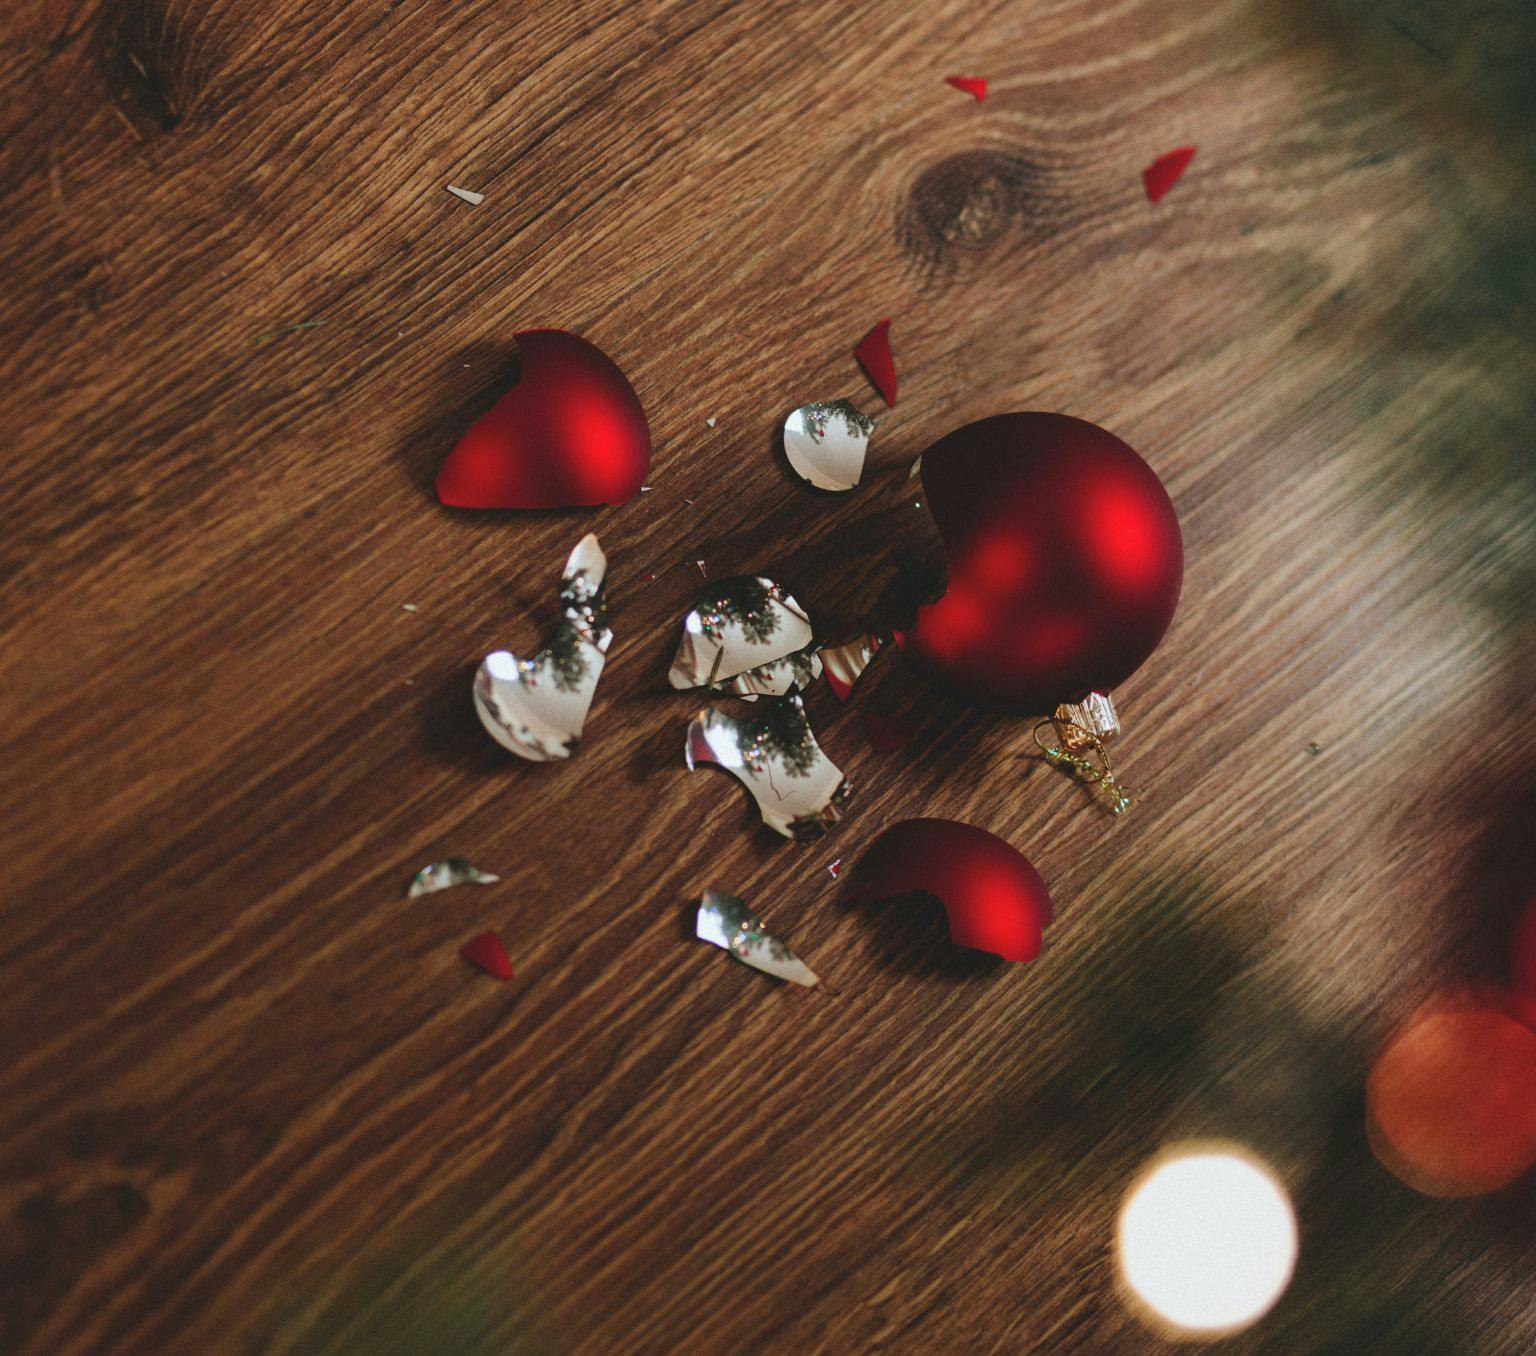 Broken Christmas bauble on the floor.